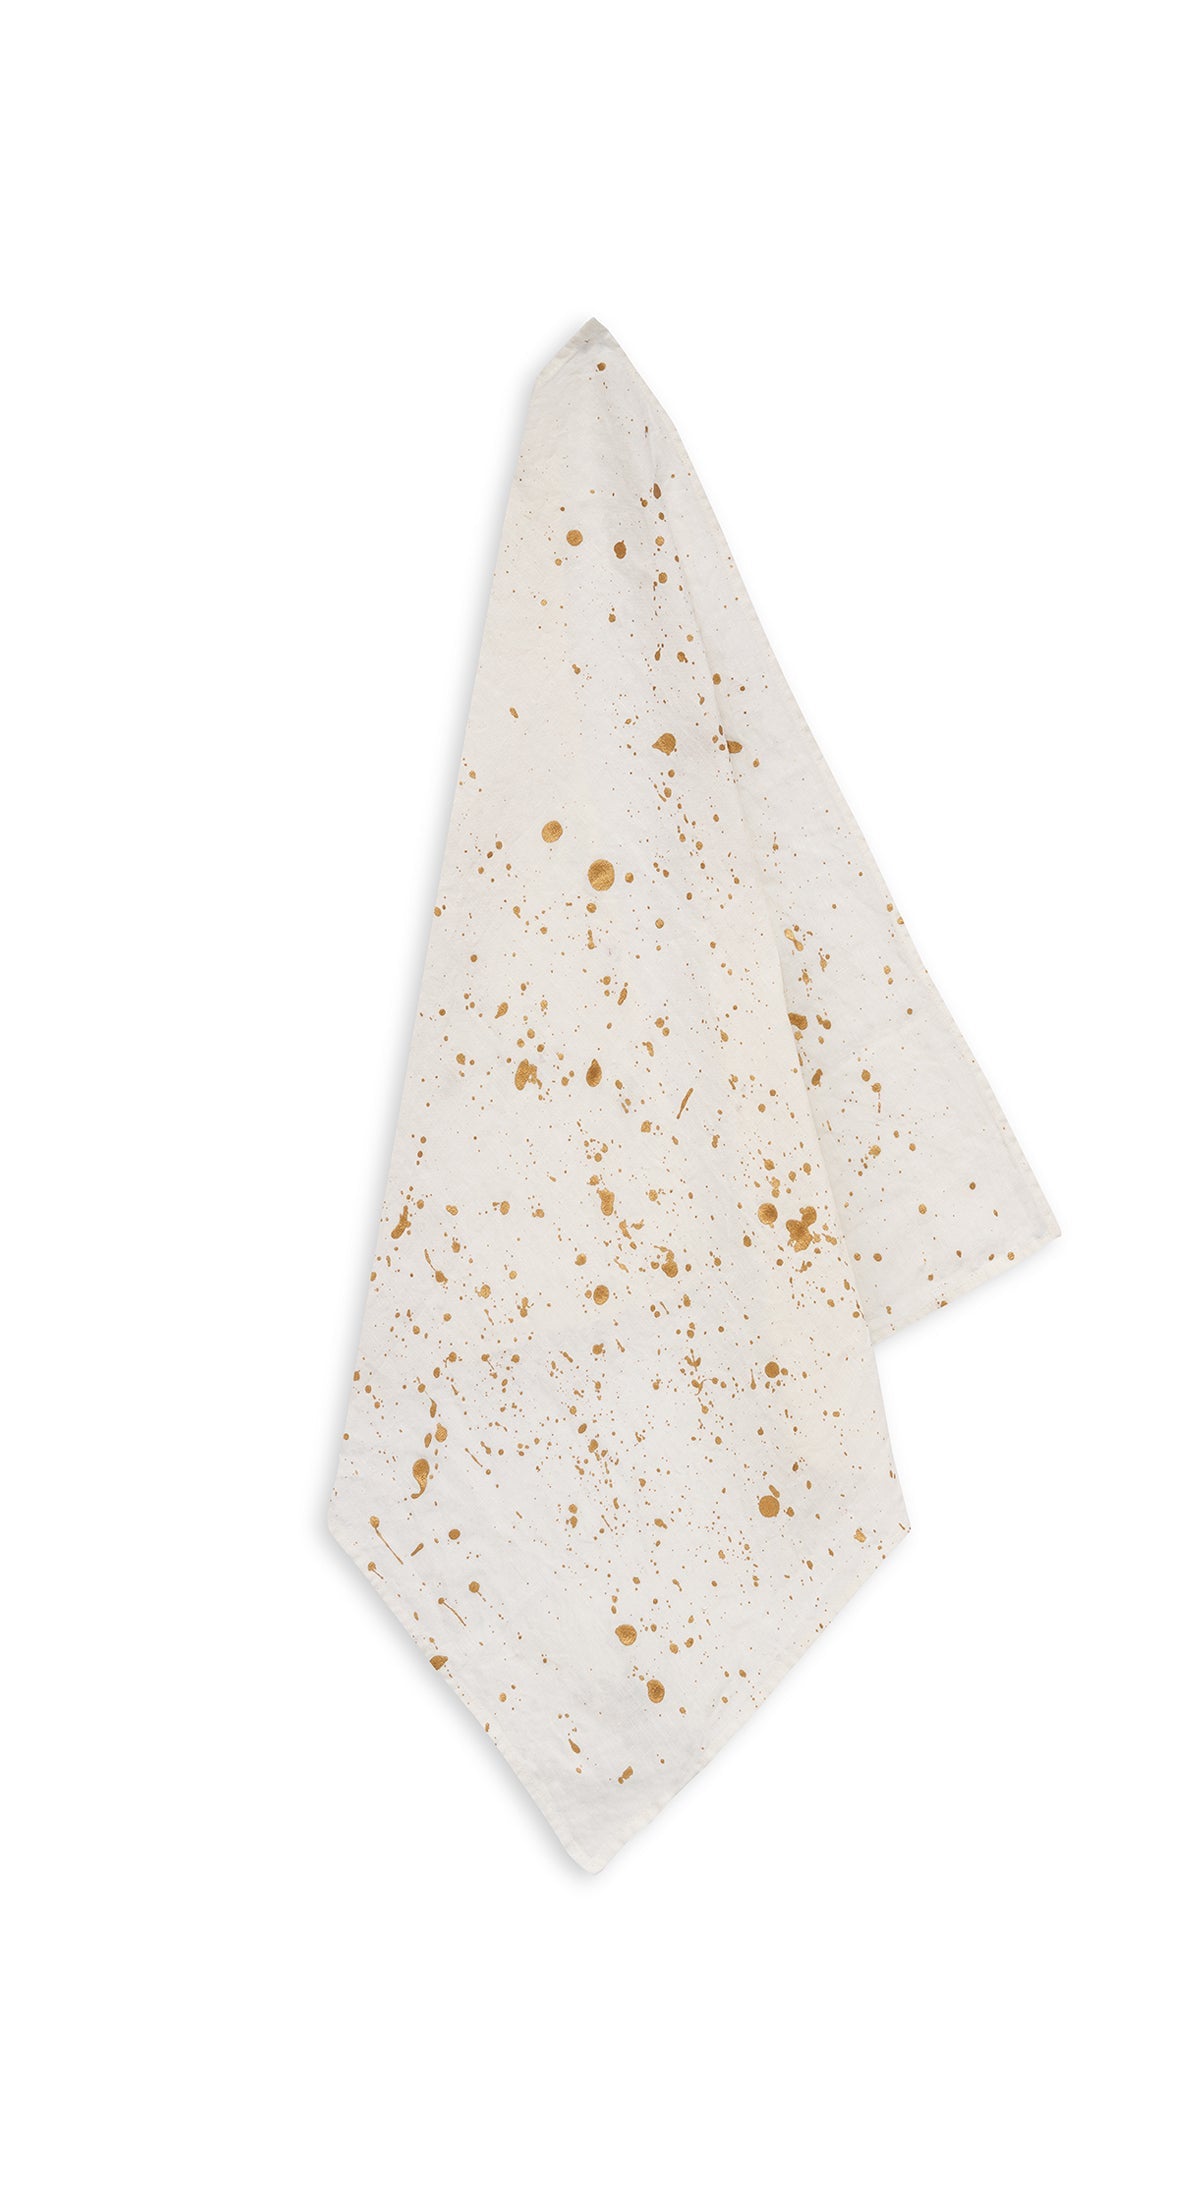 Splatter Linen Napkin in White with Gold, 50x50cm